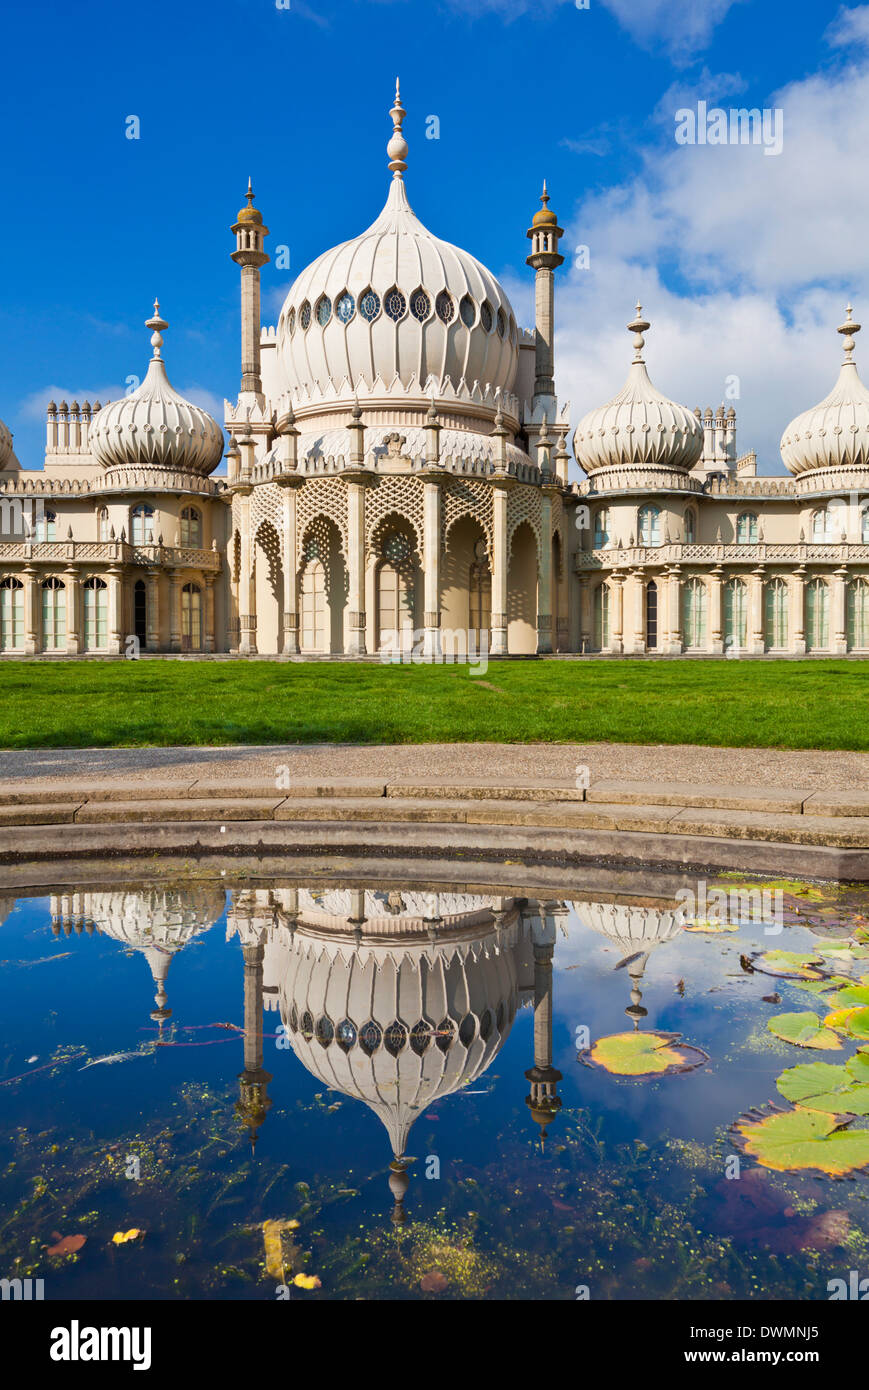 Le pavillon royal de Brighton avec réflexion, Brighton, East Sussex, Angleterre, Royaume-Uni, Europe Banque D'Images